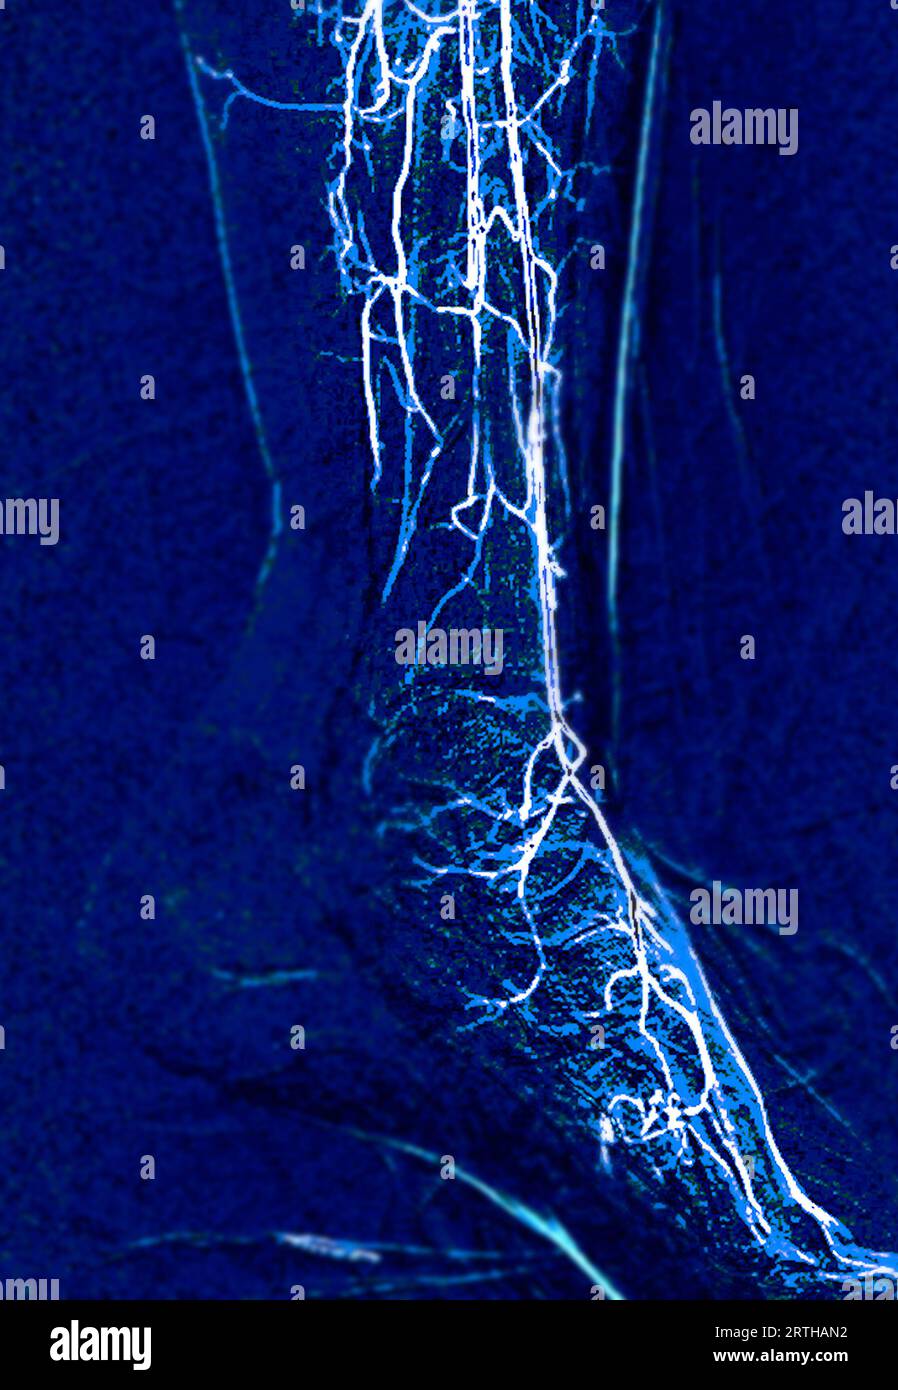 Angiorgame du pied ou angiographie plantaire montrant les artères plantaire et tarsienne au niveau du pied. Banque D'Images